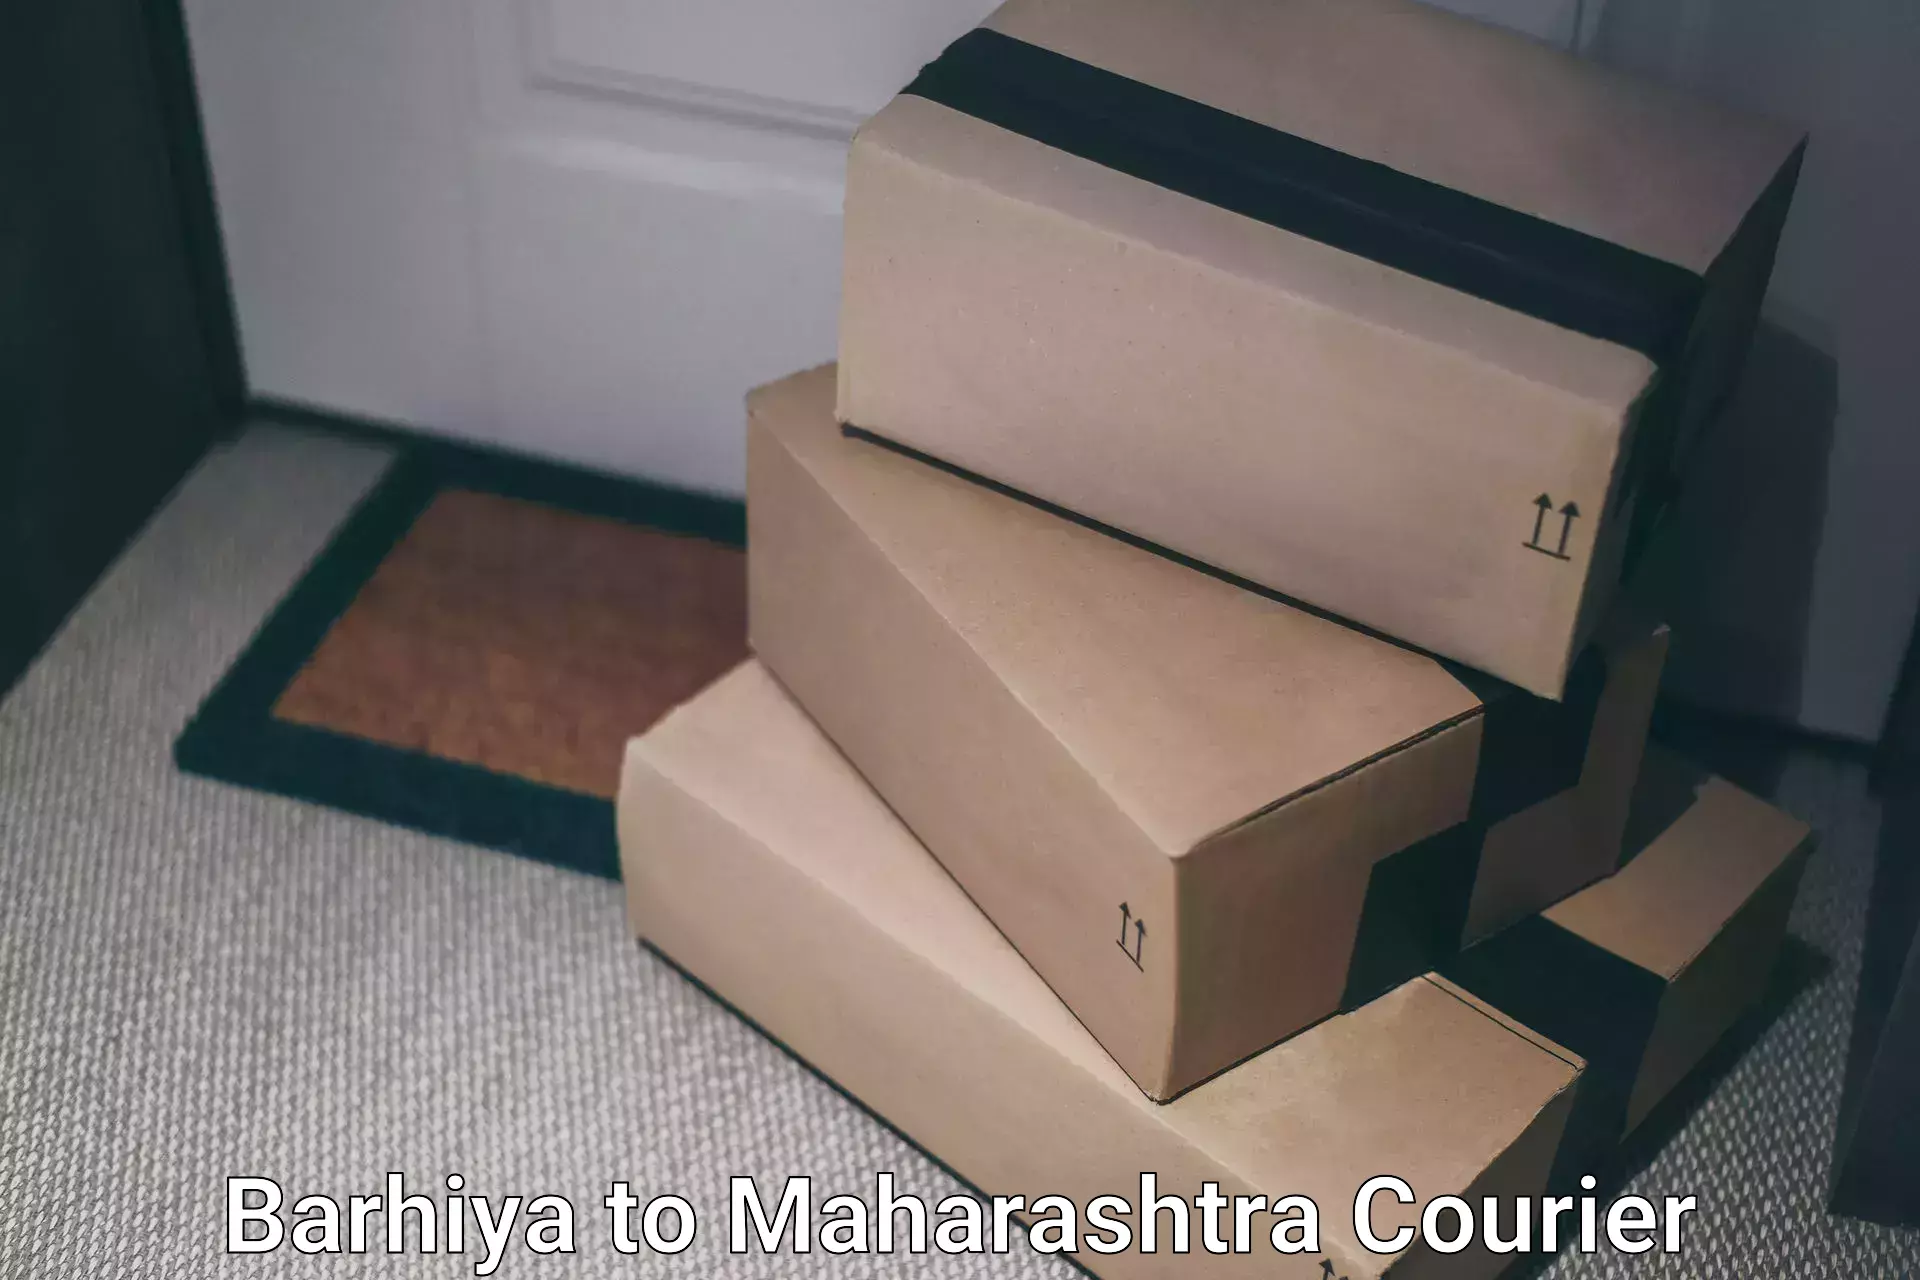 Comprehensive shipping network Barhiya to Maharashtra